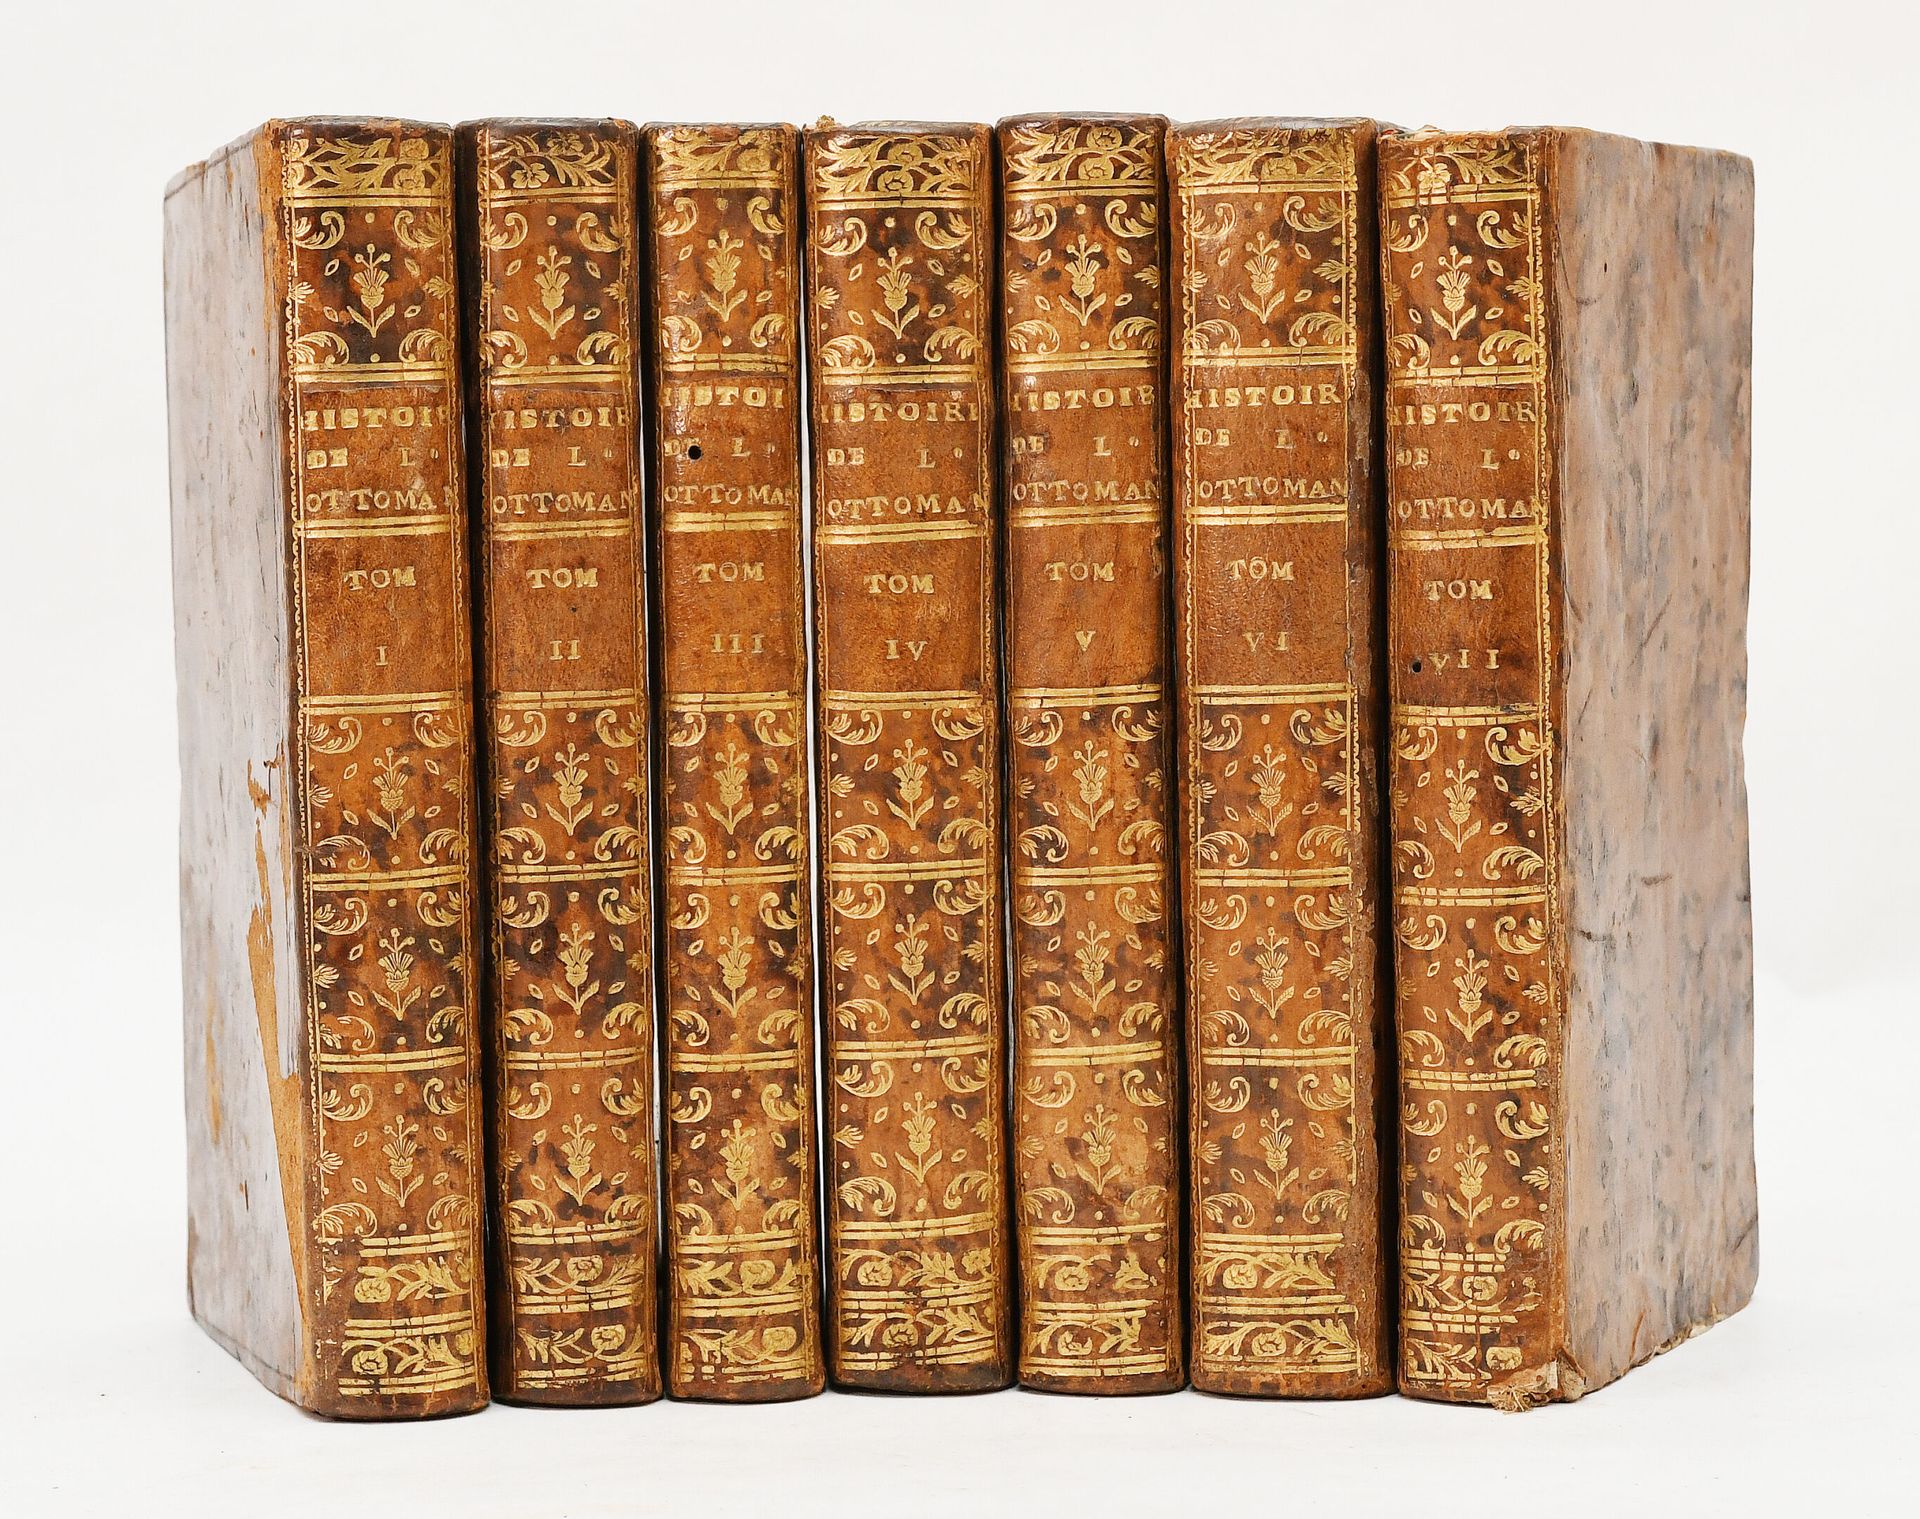 Null [旅行-海军]。SAGREDO（乔万尼）。奥斯曼帝国的历史。
阿姆斯特丹，皮埃尔-亨伯特，1732-42。
7卷12册，大理石花纹小牛皮，光滑的书脊上&hellip;